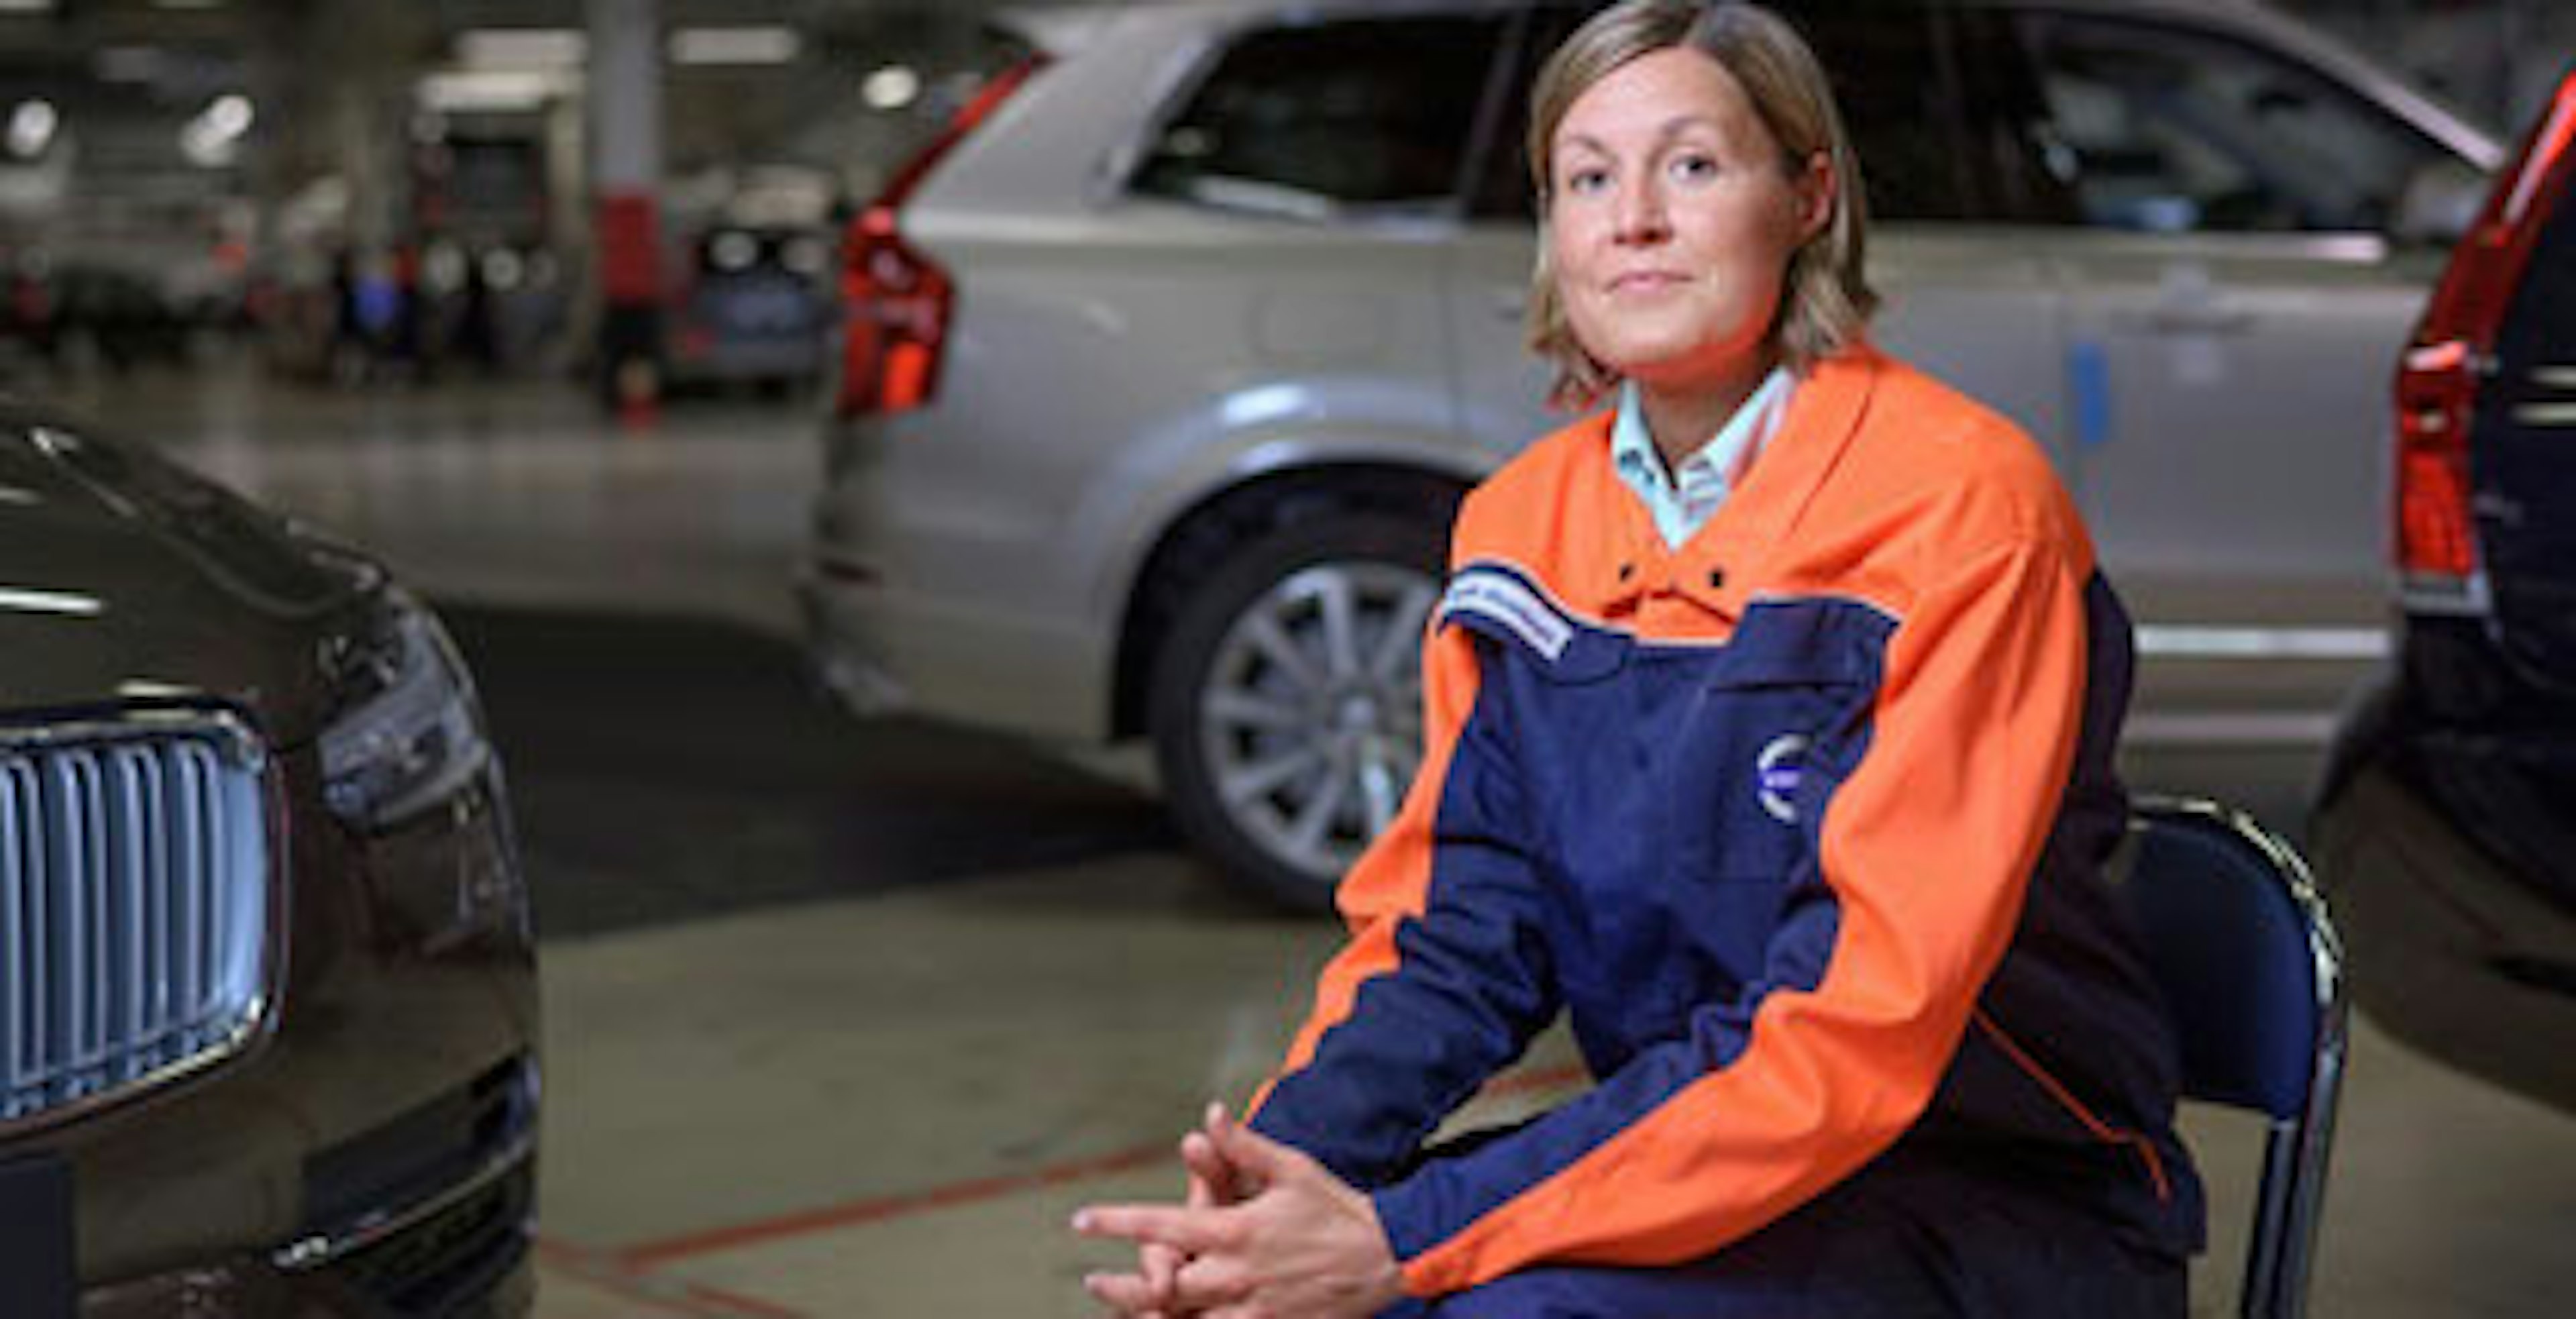 En kvinnlig anställd på Volvo sitter på en stol i en lokal med bilar